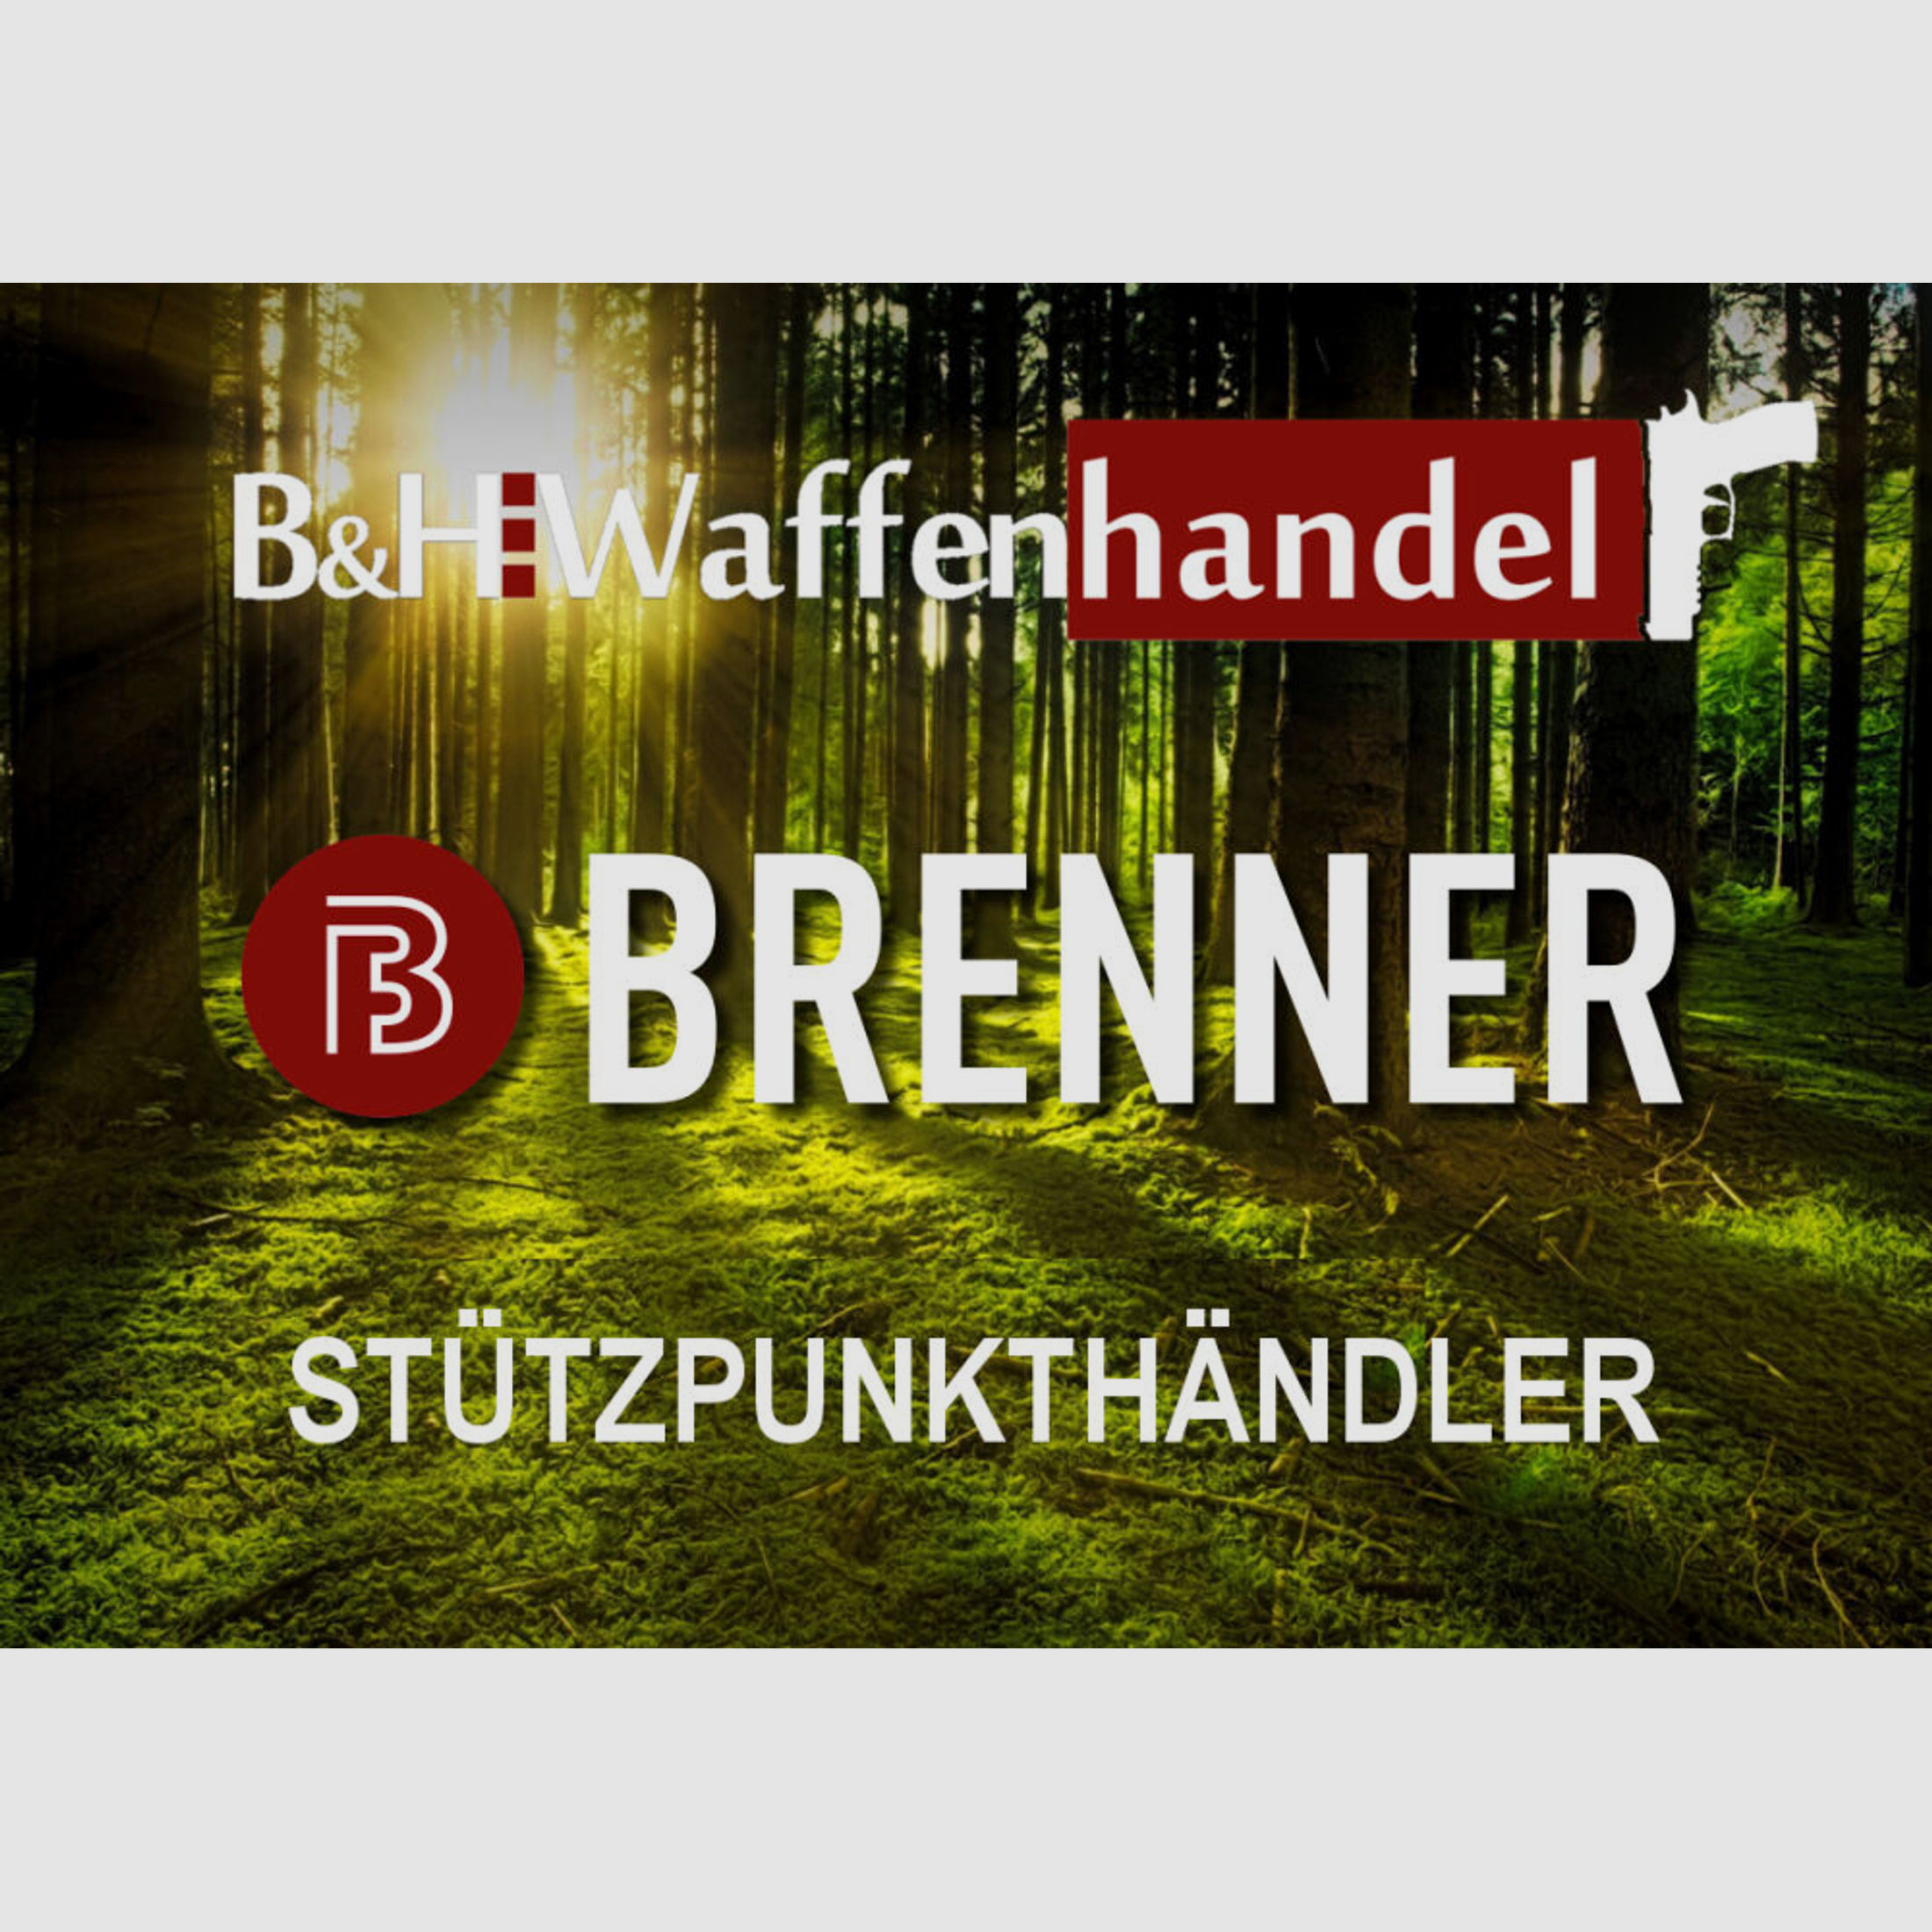 Brenner	 BR20 L.E. Holzschaft mit verstellbarem Schaftrücken LL 47cm